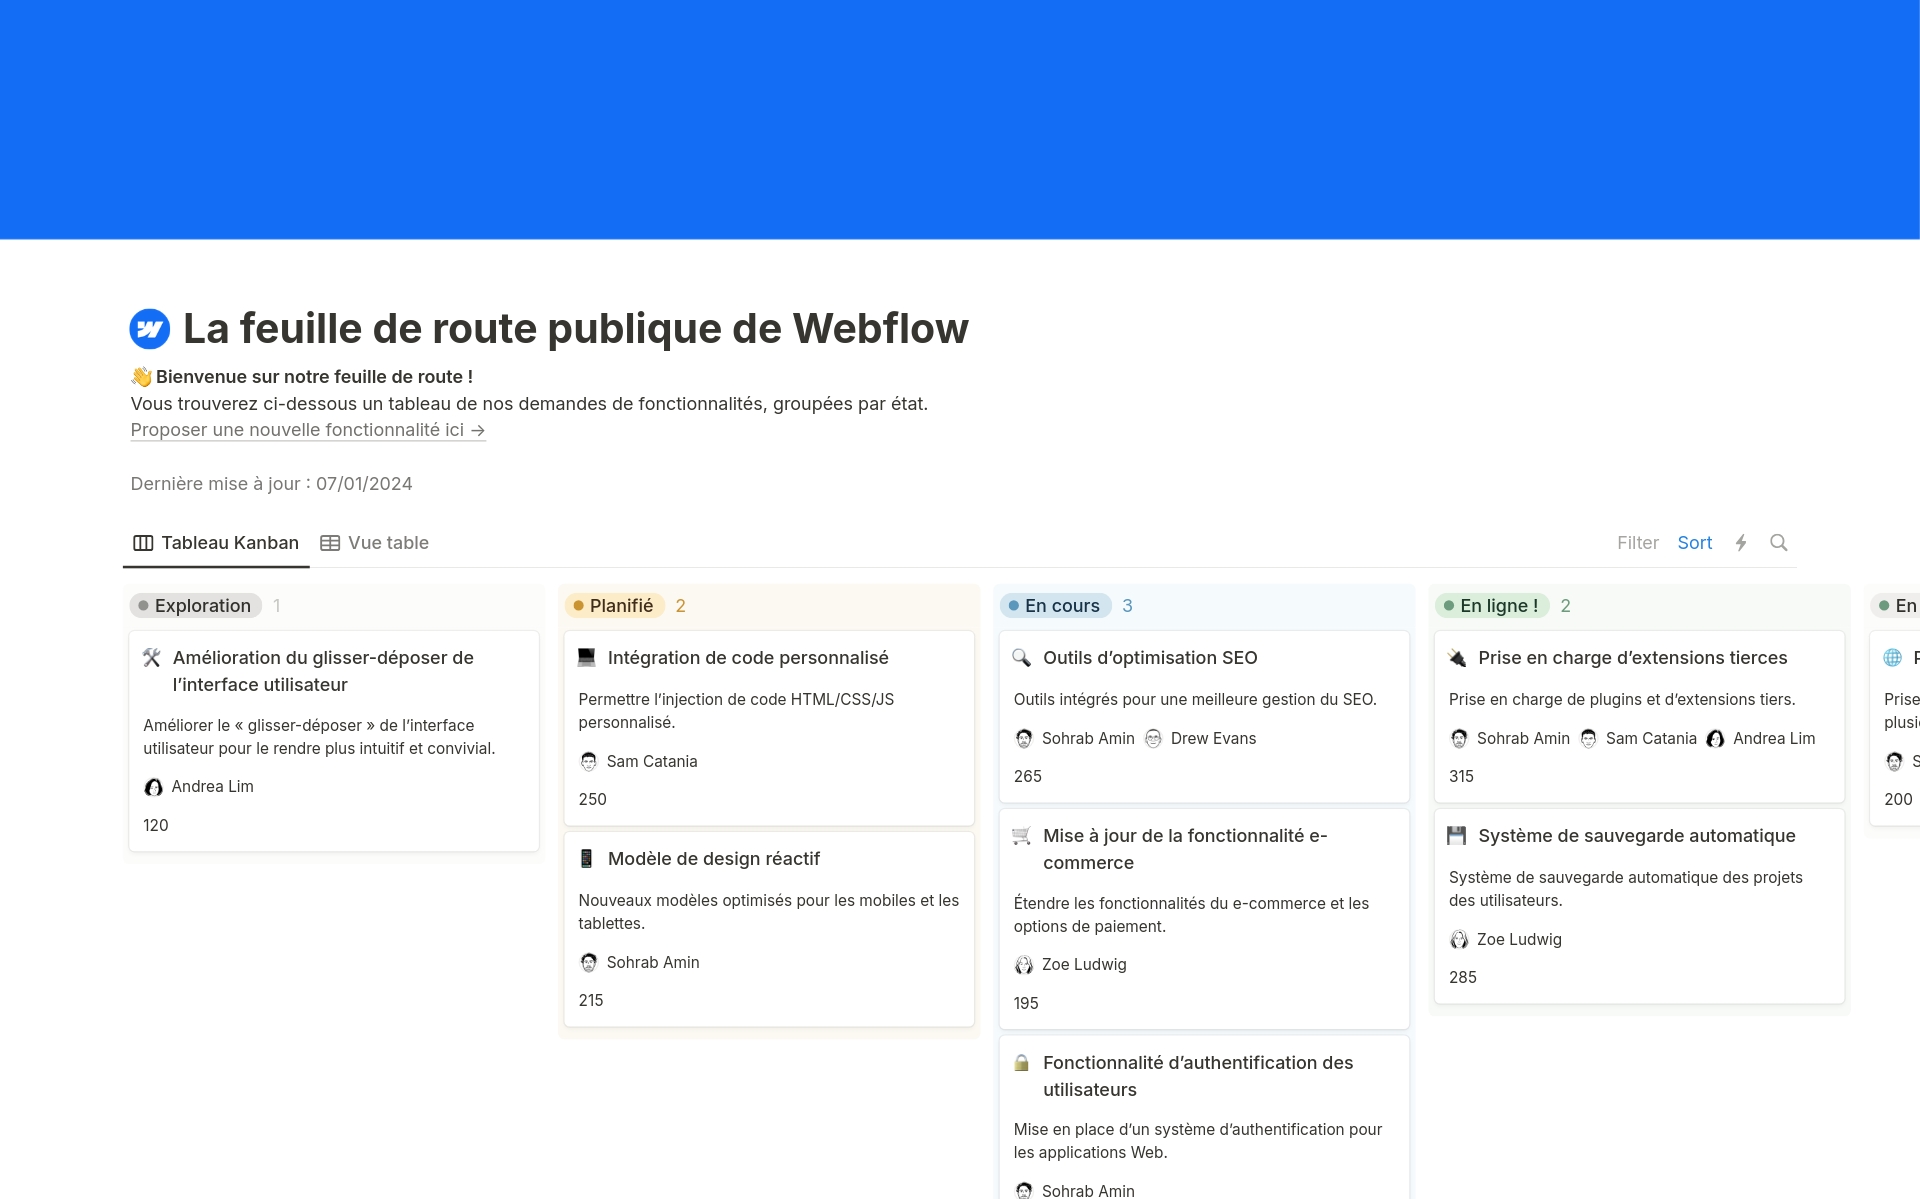 Le modèle de feuille de route publique de Webflow offre une vue interactive et transparente du parcours de développement de votre produit. Suivez et présentez l’avancement des fonctionnalités, les votes et les affectations des équipes en un format complet et public.